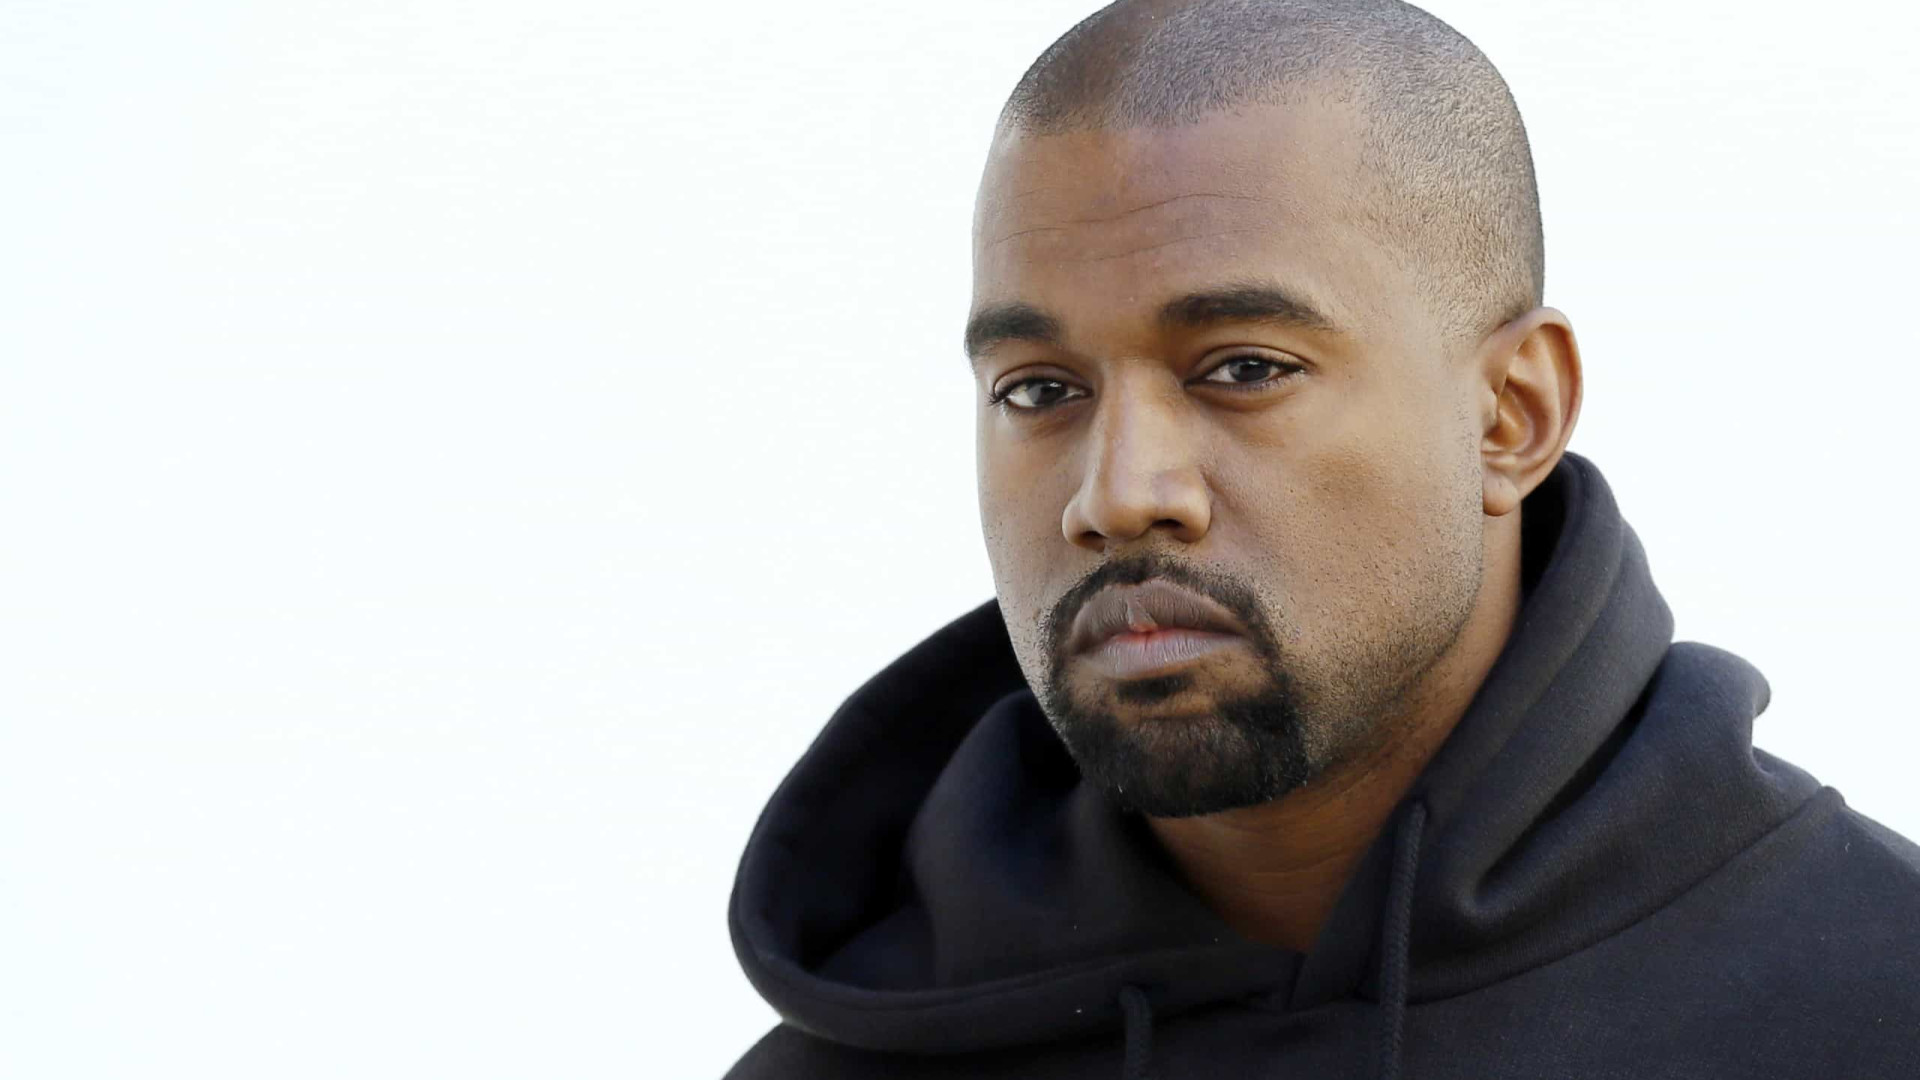 Adidas rompe com Kanye West após comentários antissemitas